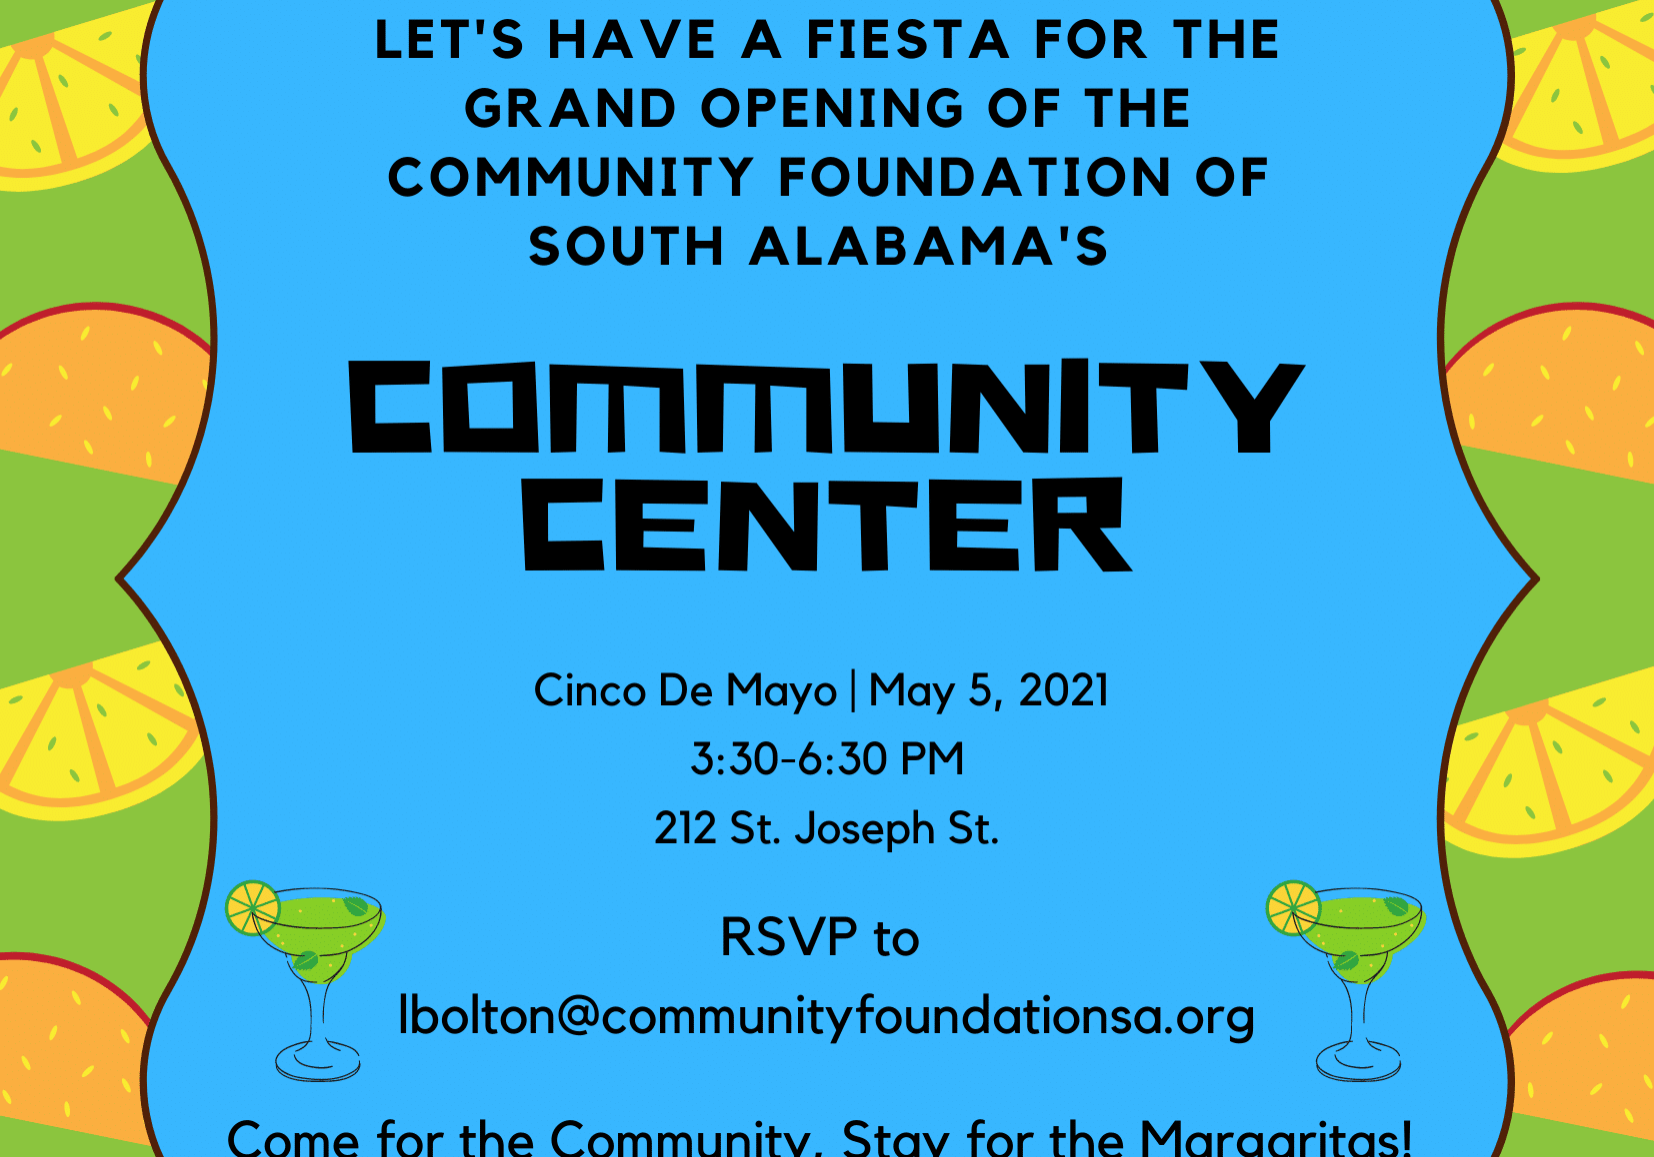 Community Foundation of South Alabama Opening Community Center